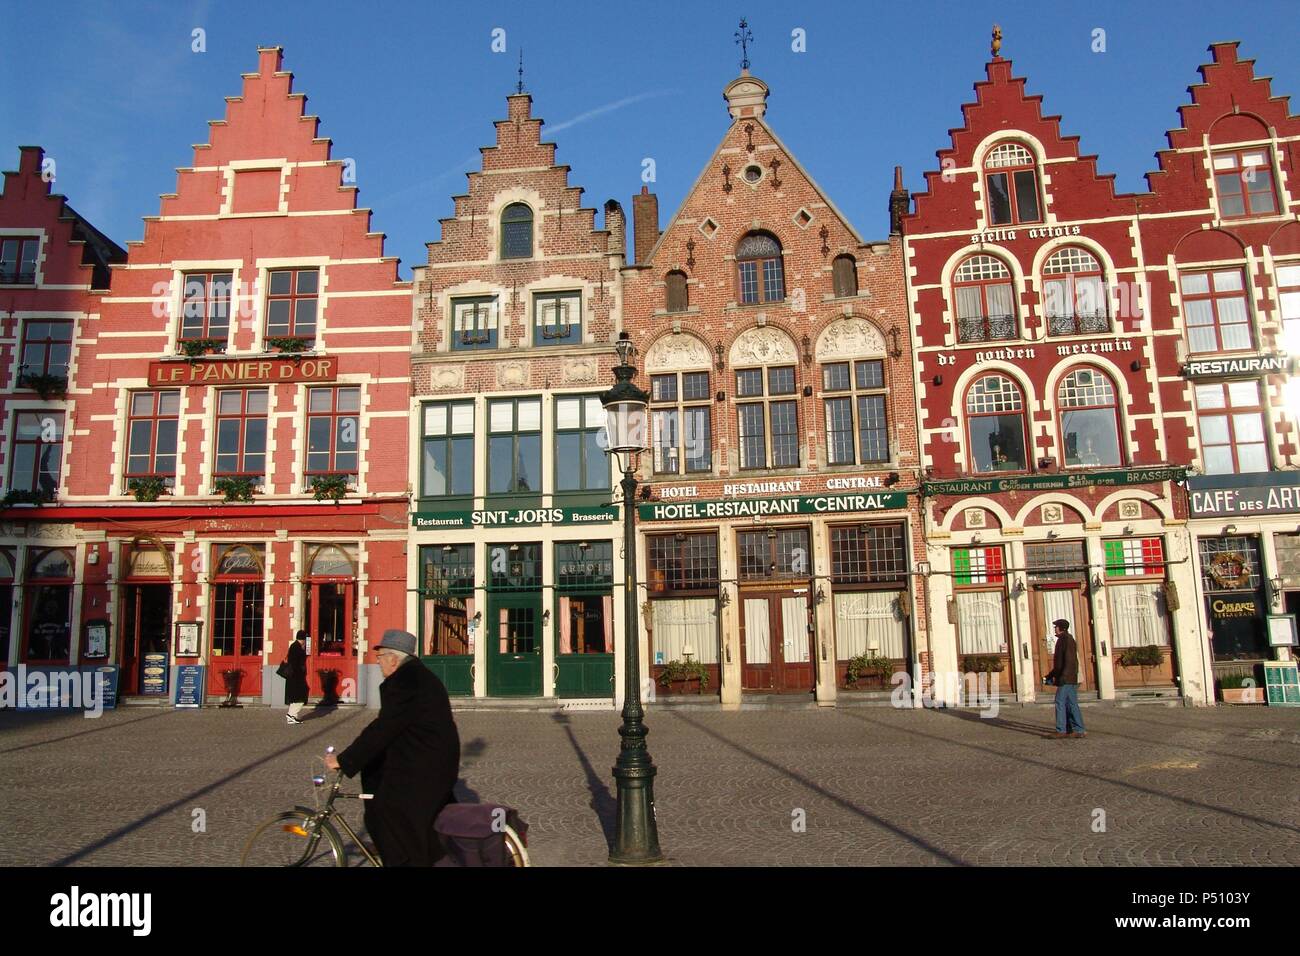 Belgica Brujas Casas Tipicas En El Centro De La Ciudad Estado De Flandes Occidental Stockfotografie Alamy